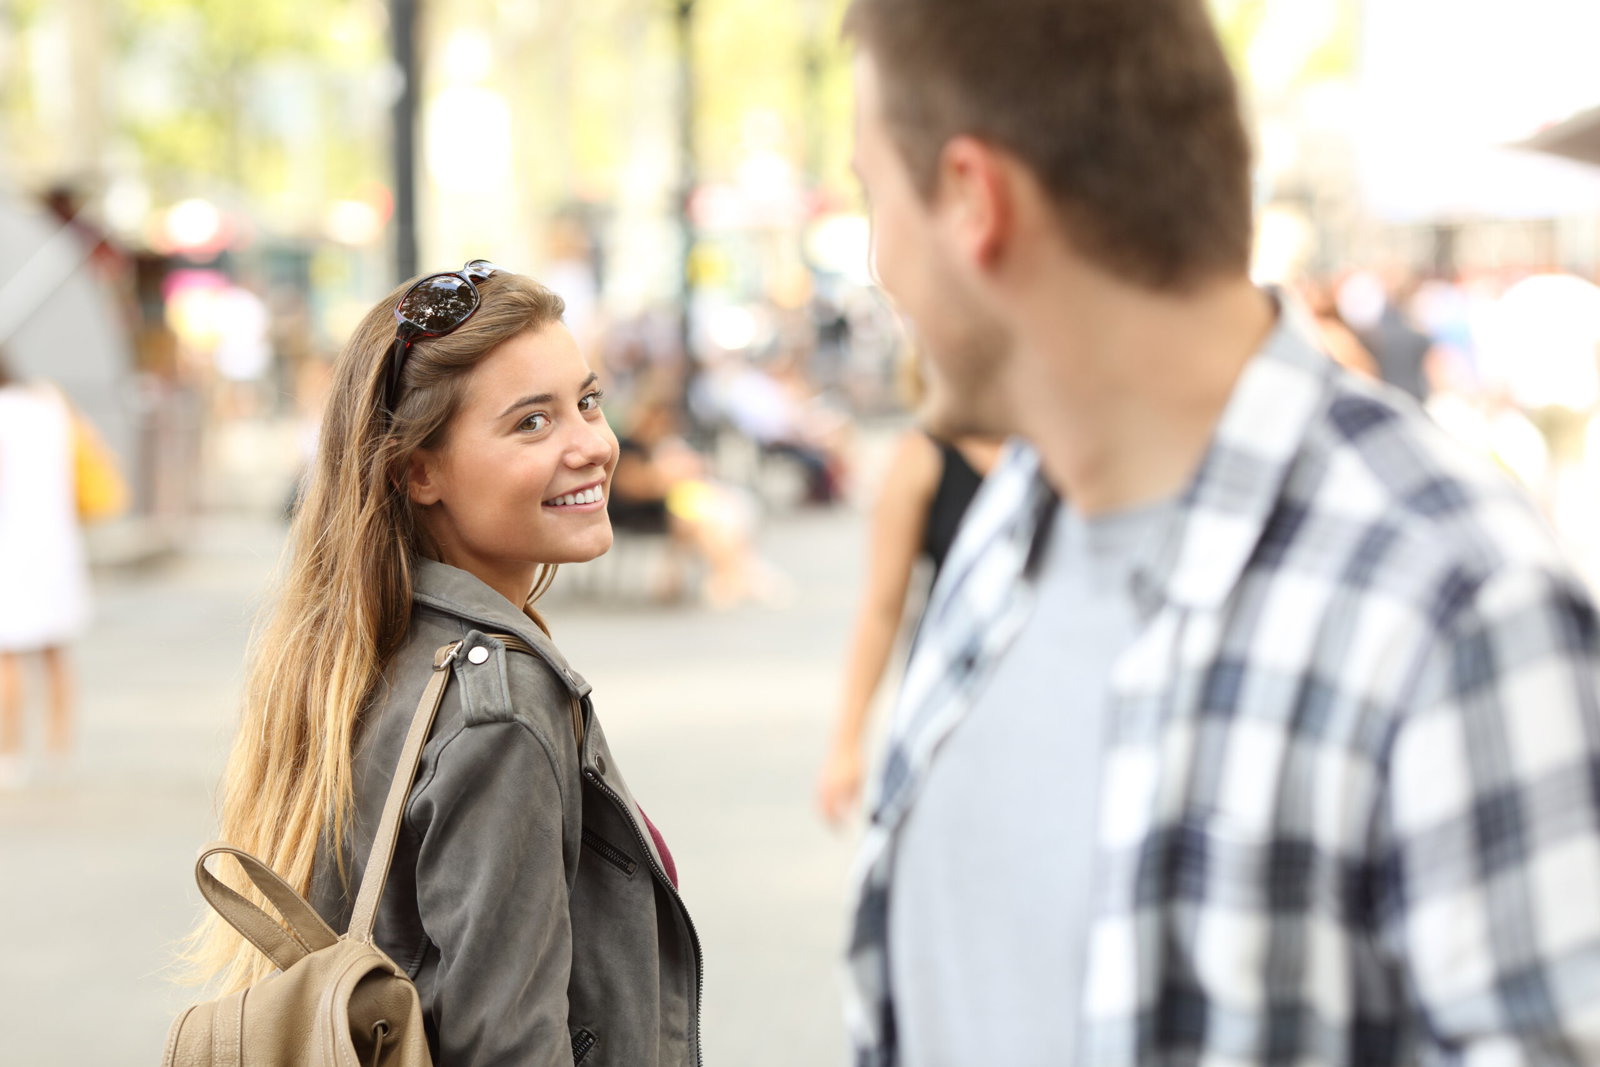 Girl smiling at stranger on the street